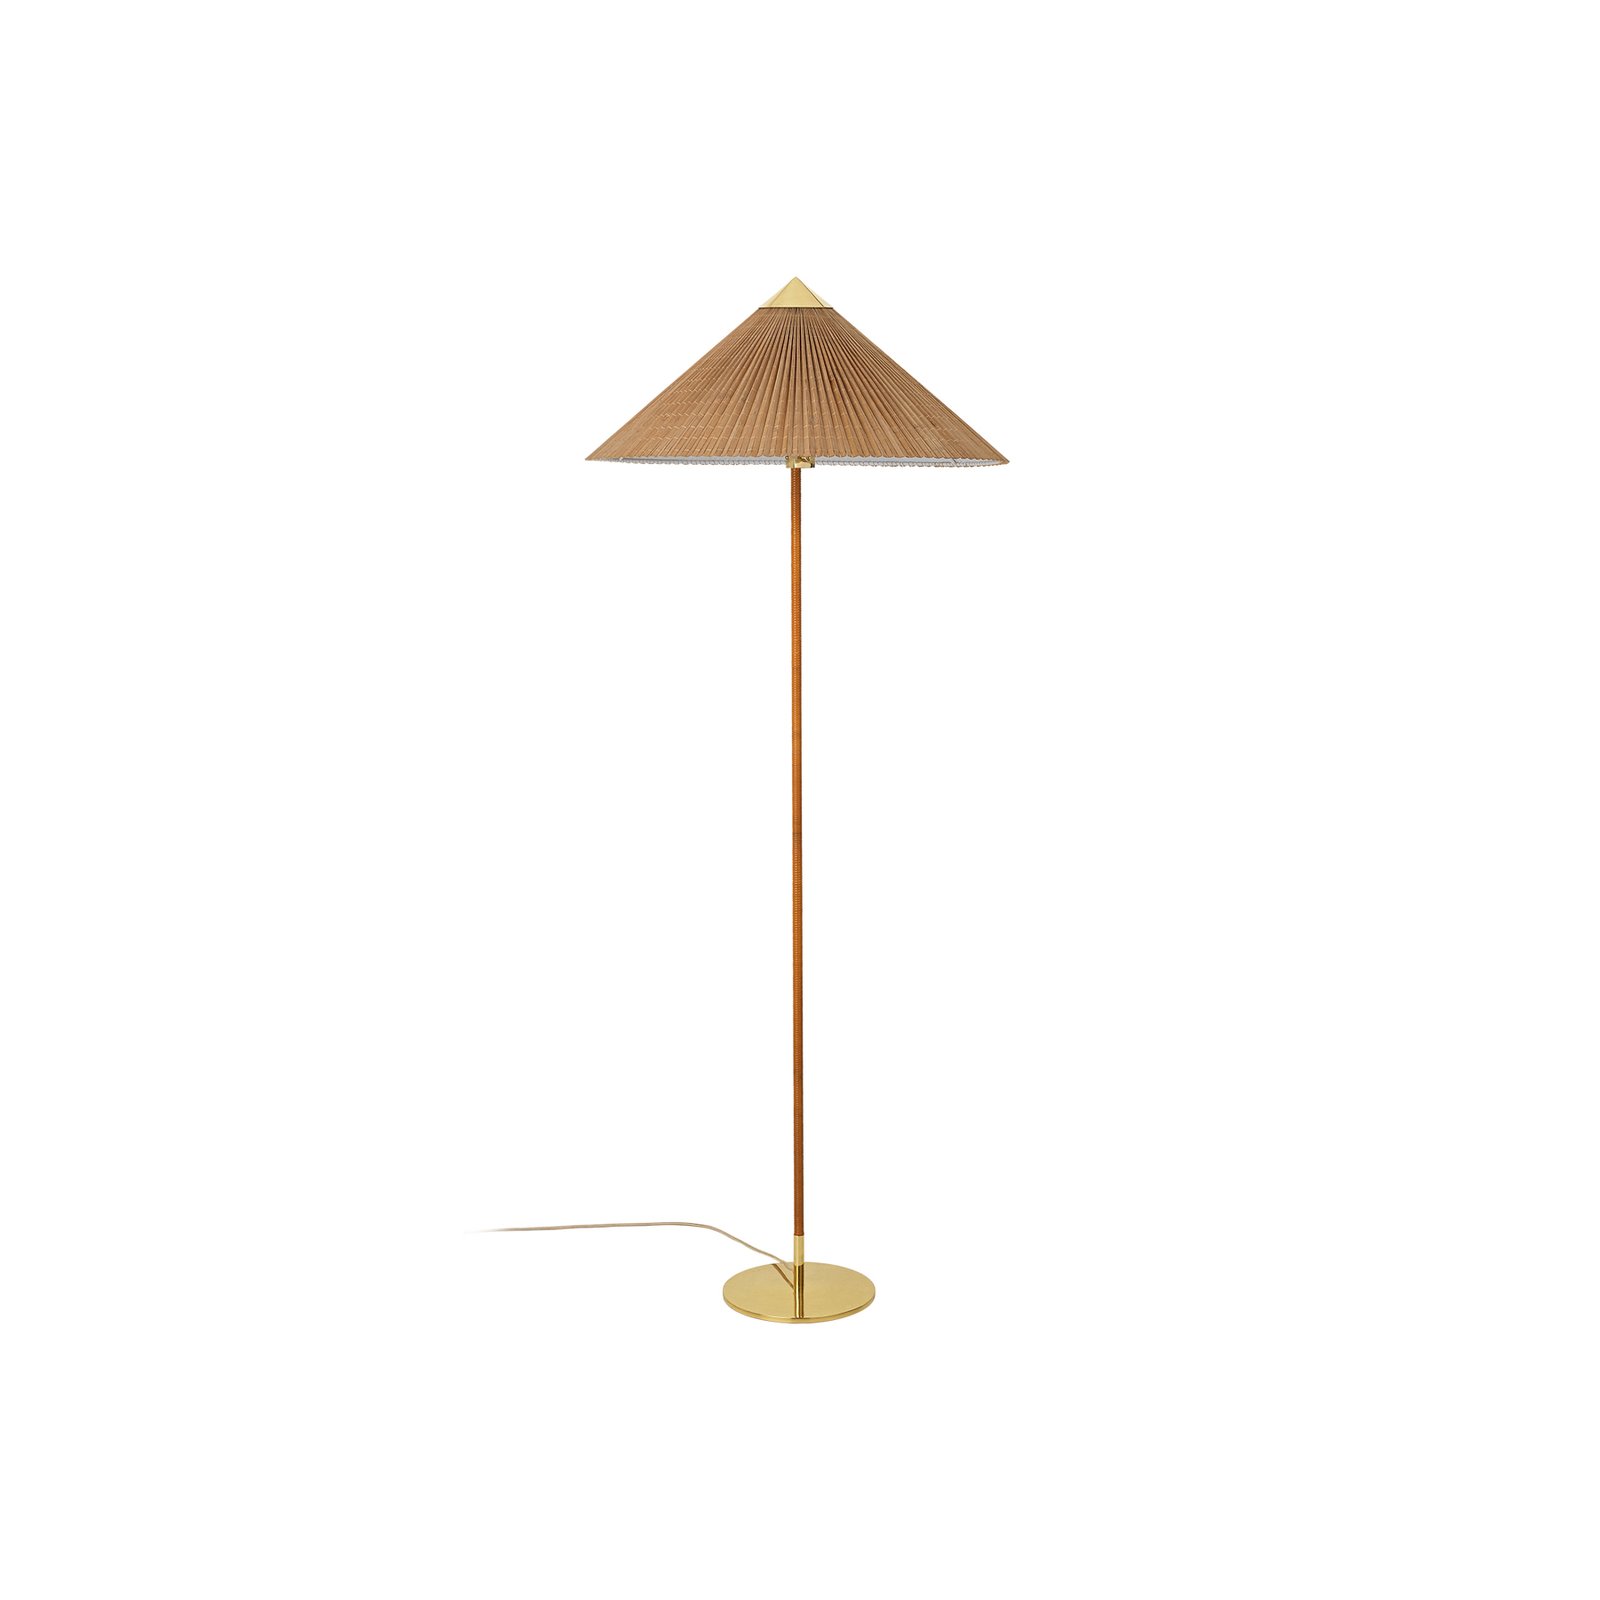 GUBI lampe sur pied 9602, laiton/rotin, abat-jour en bambou